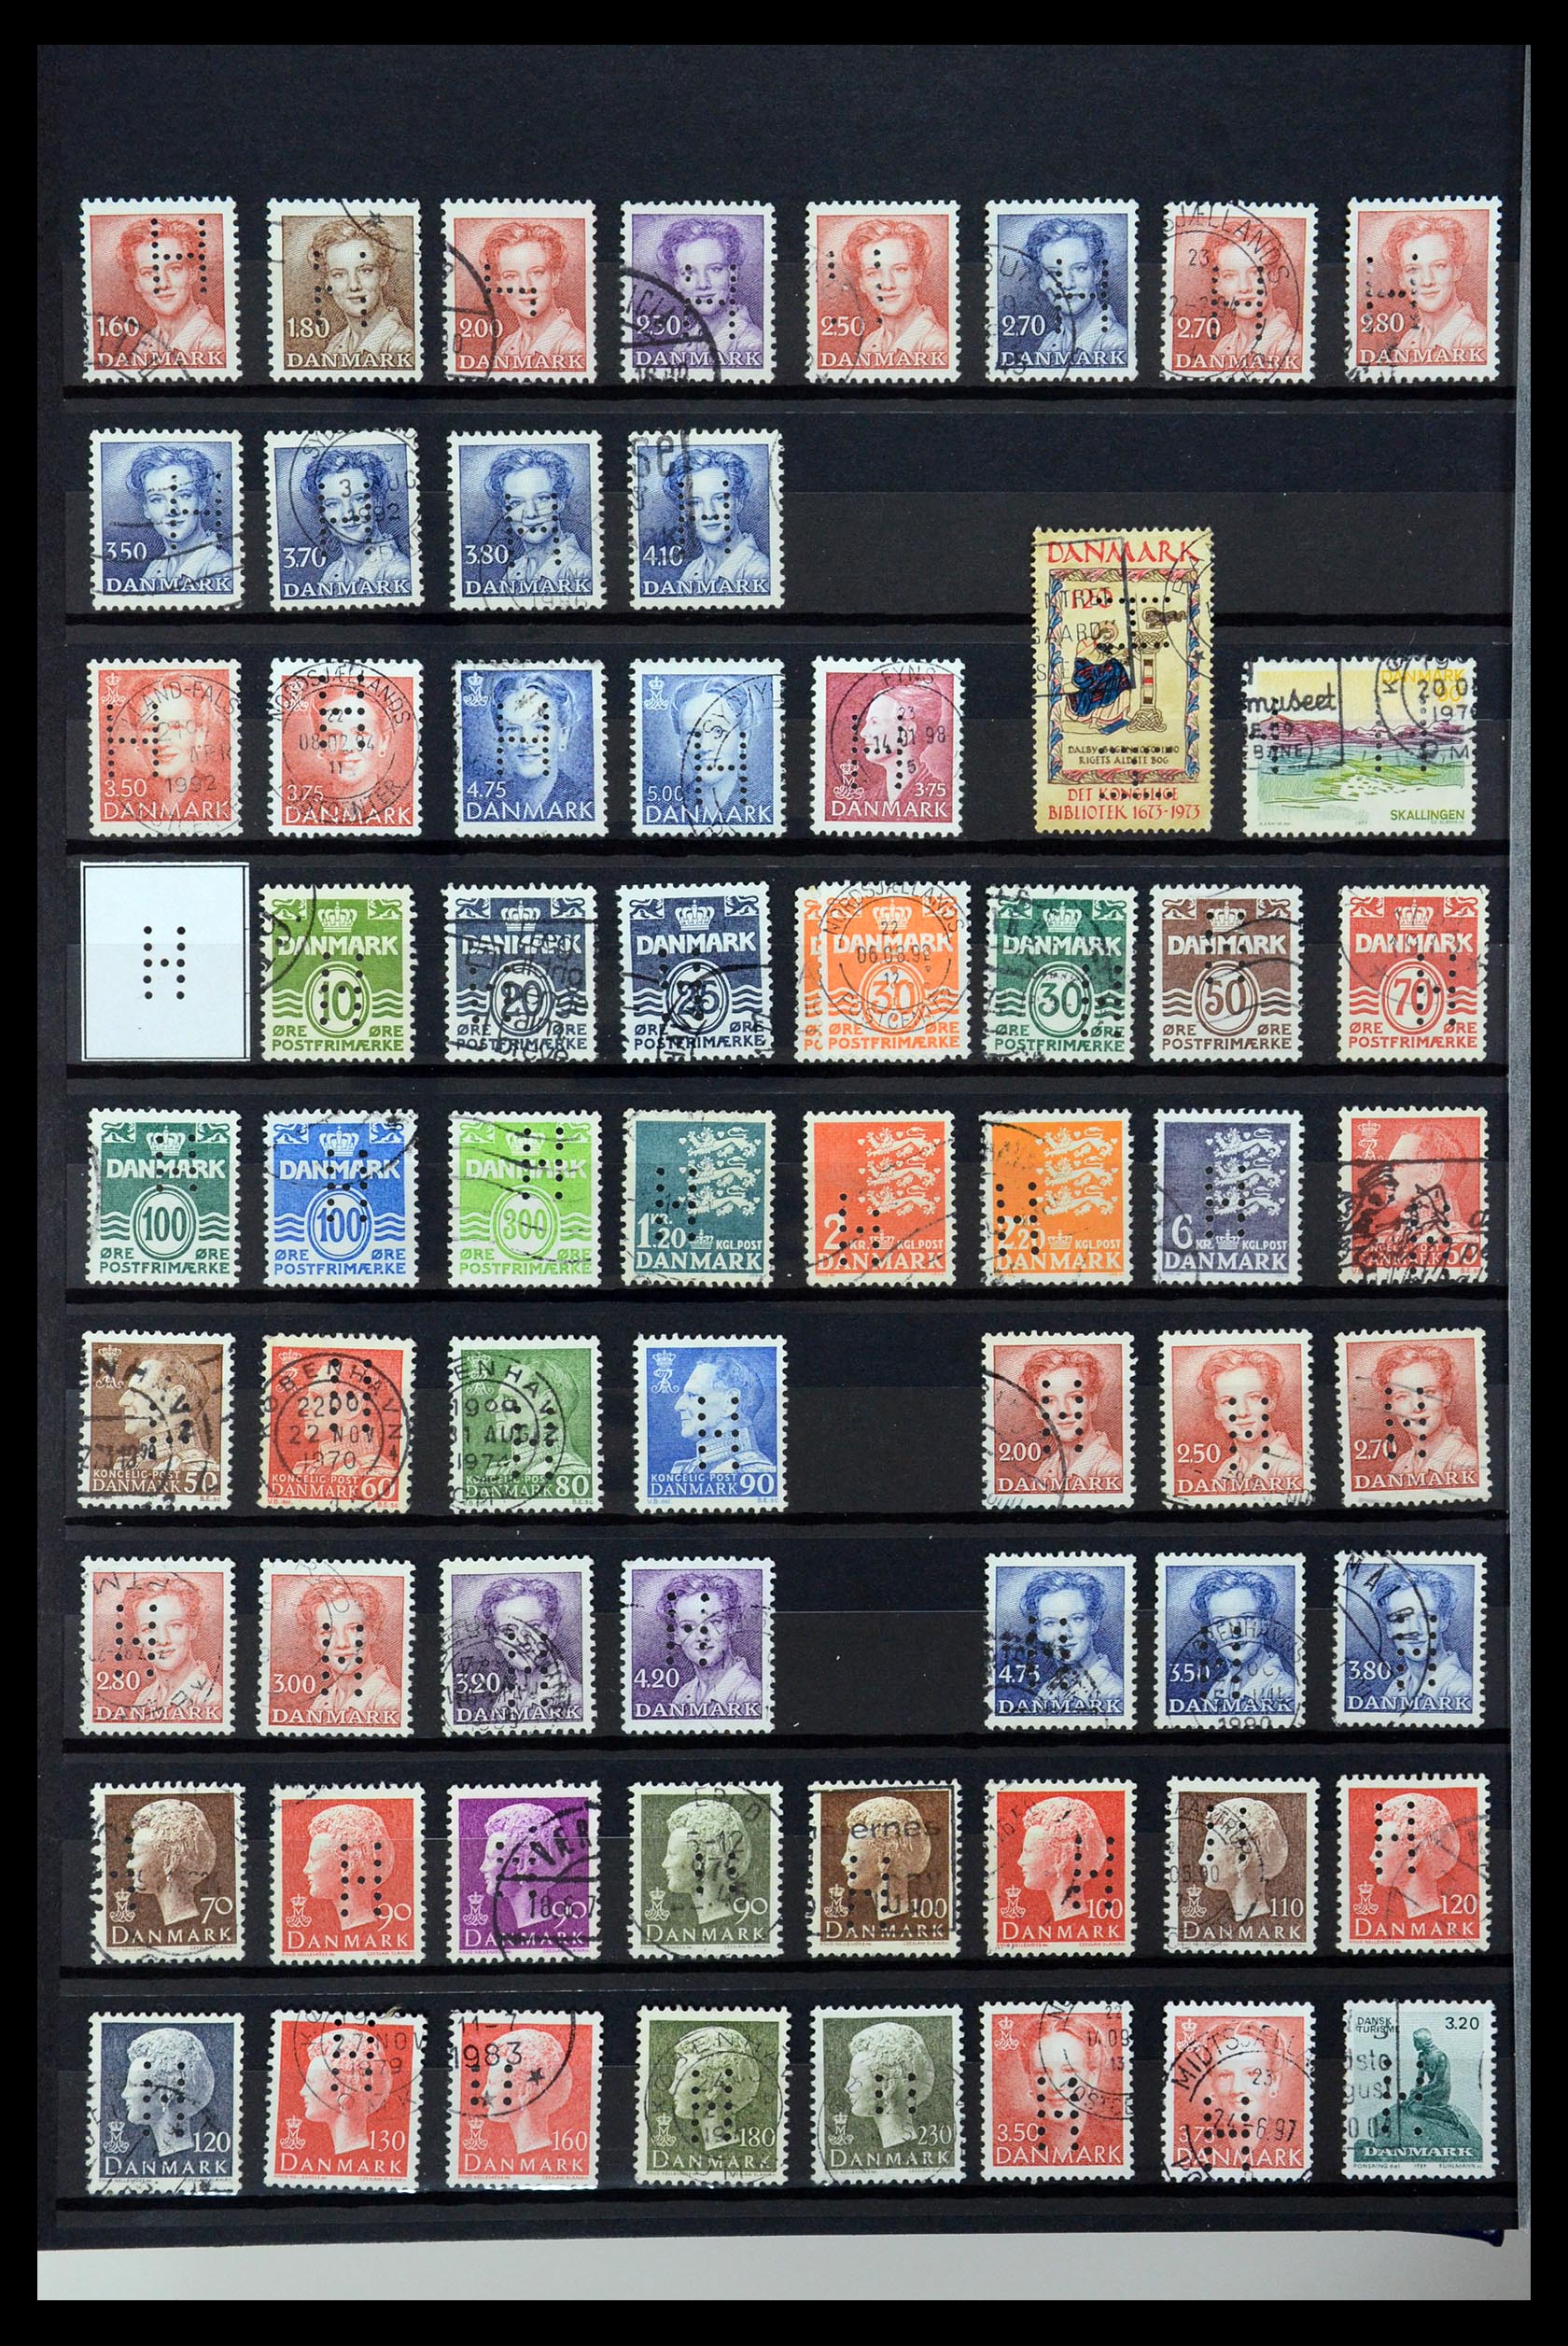 36396 123 - Postzegelverzameling 36396 Denemarken perfins.